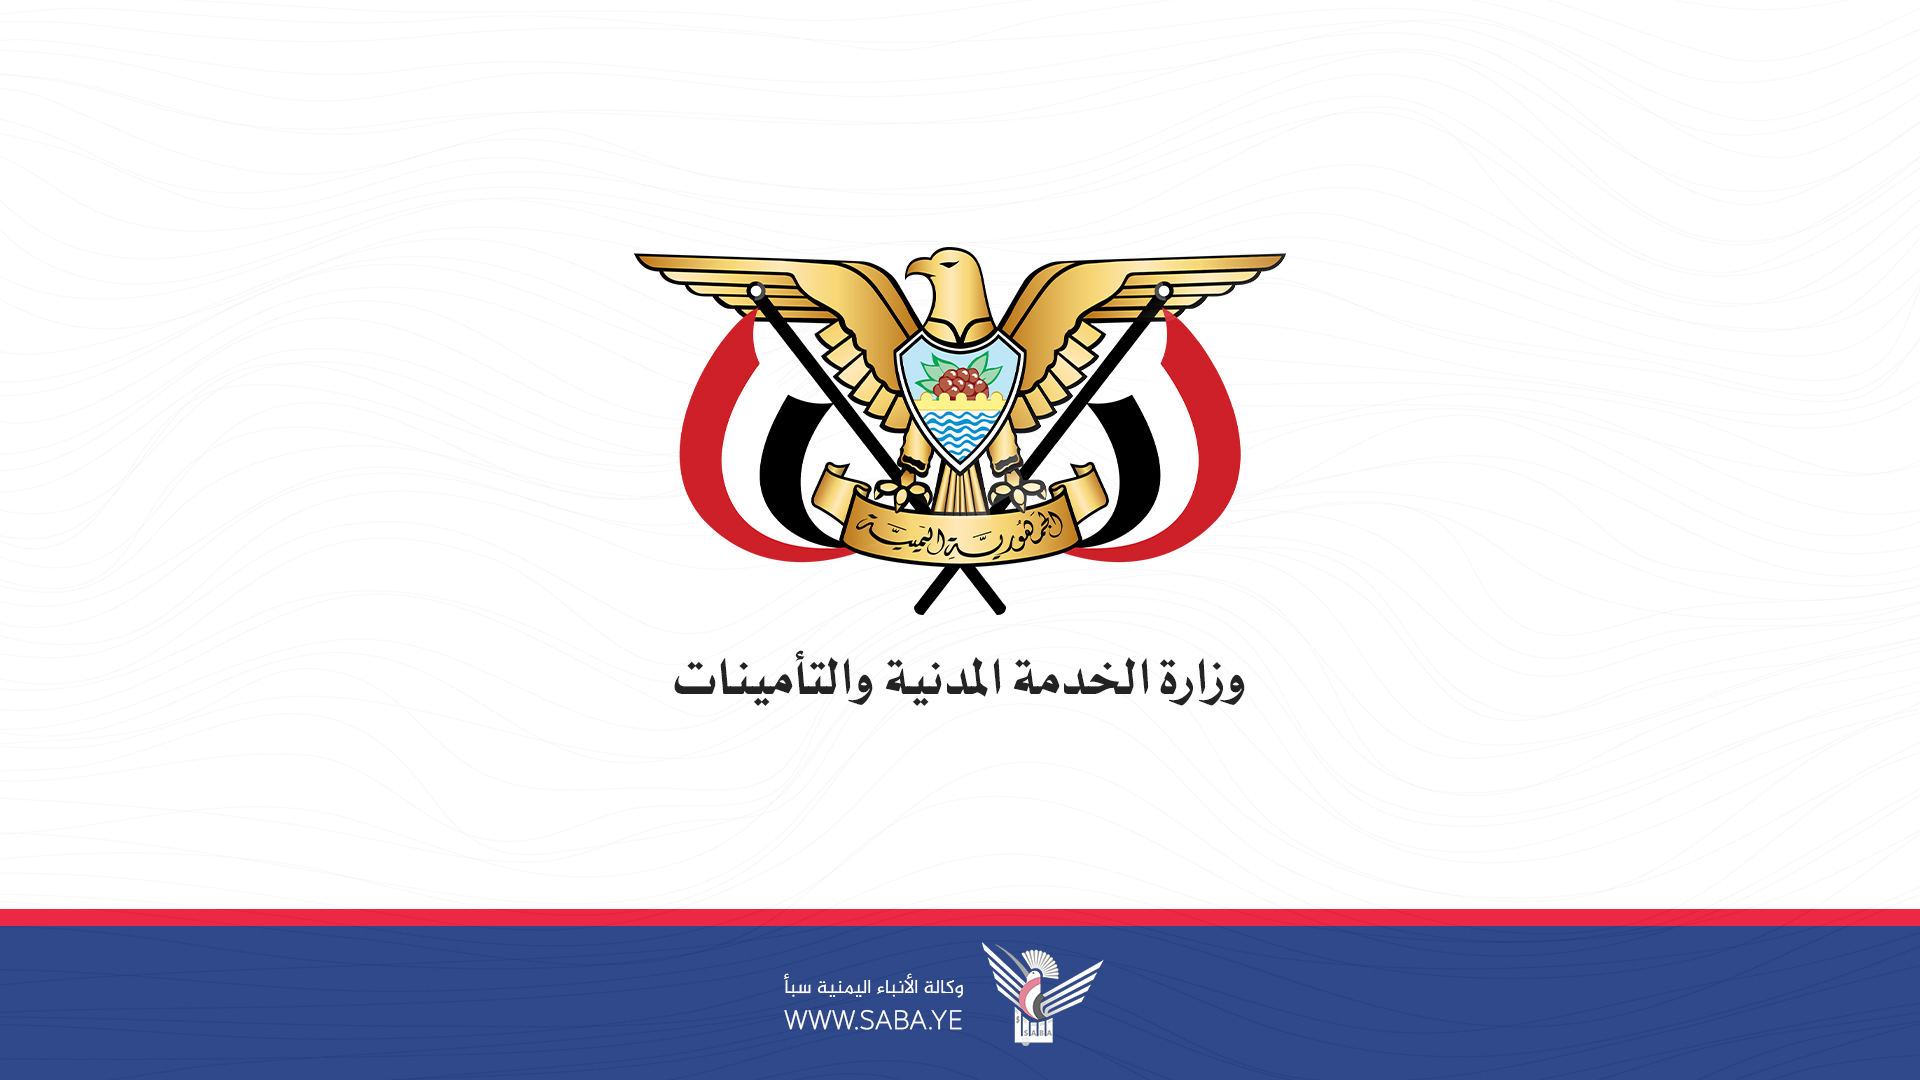  El Ministerio de Servicio Civil y Seguros fija los horarios y jornadas laborales durante el mes de Ramadán.